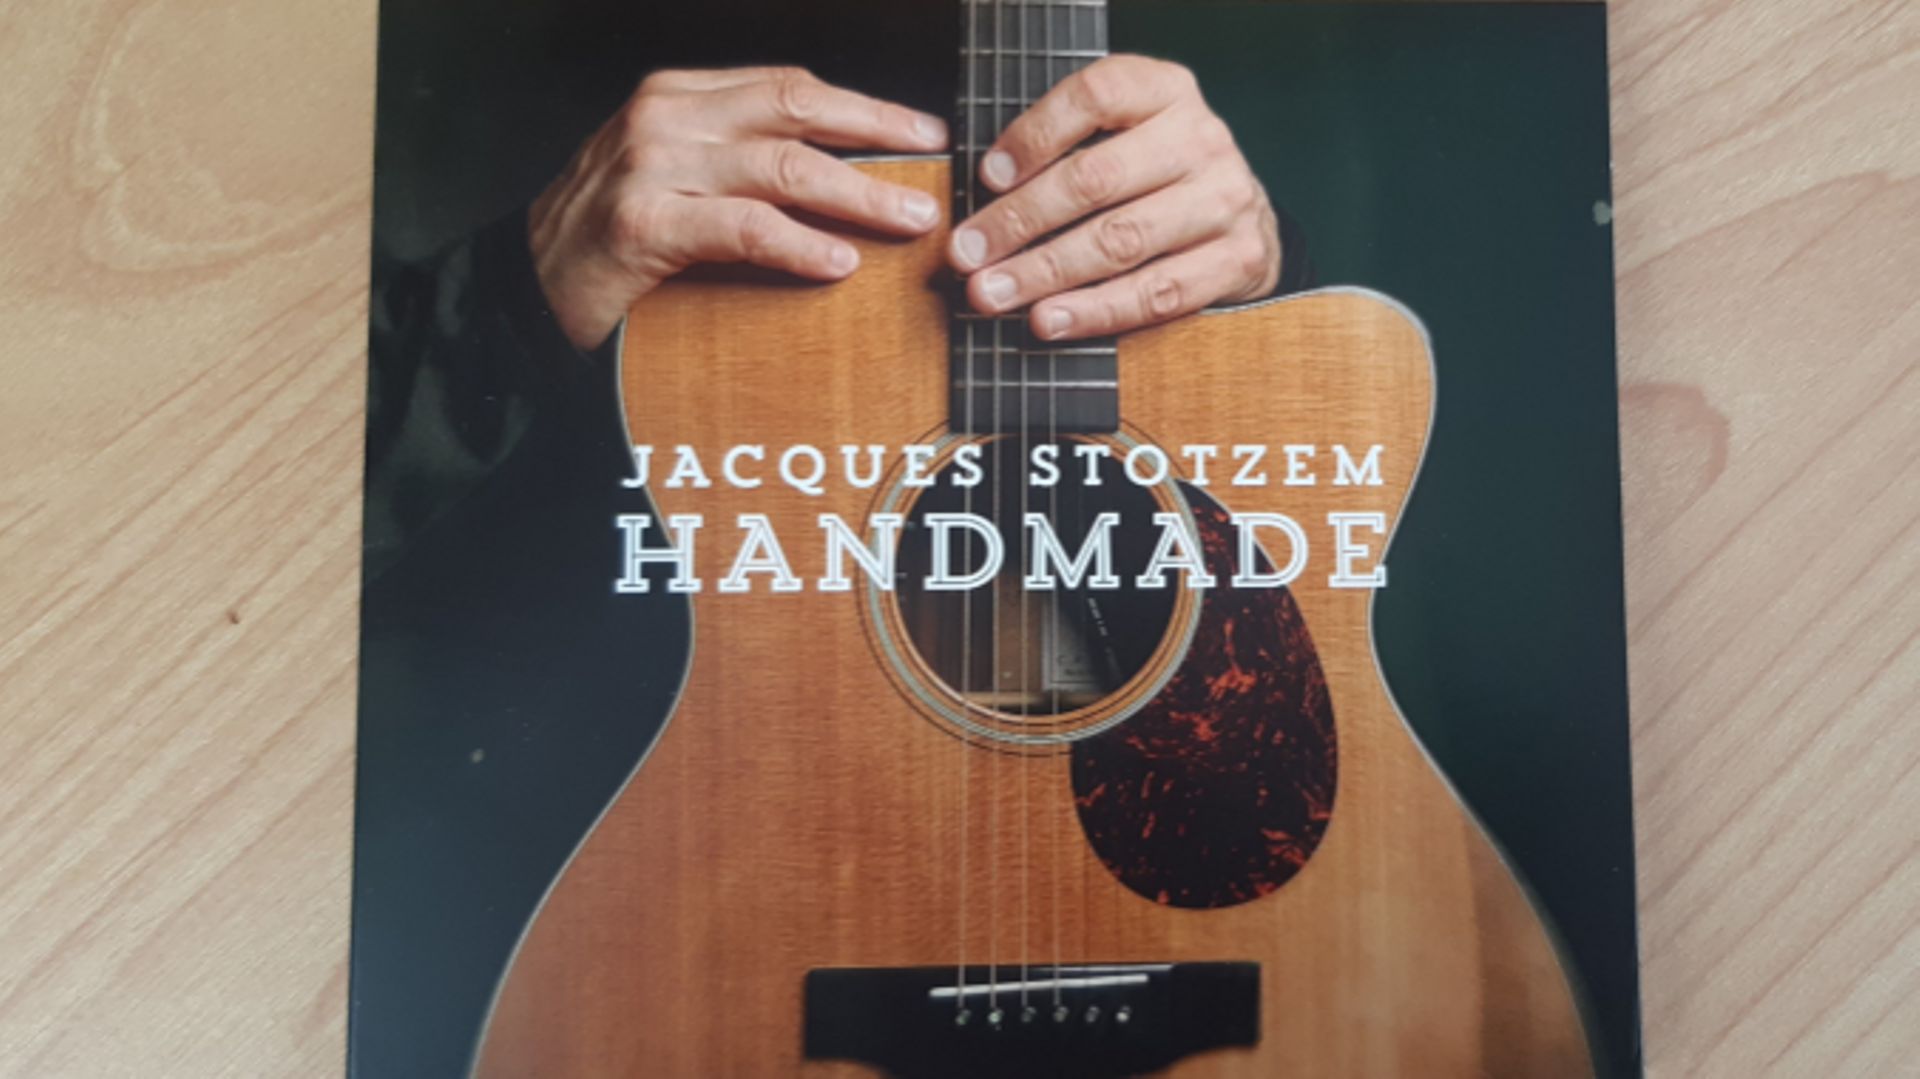 "Handmade", le nouvel album du guitariste verviétois Jacques Stotzem